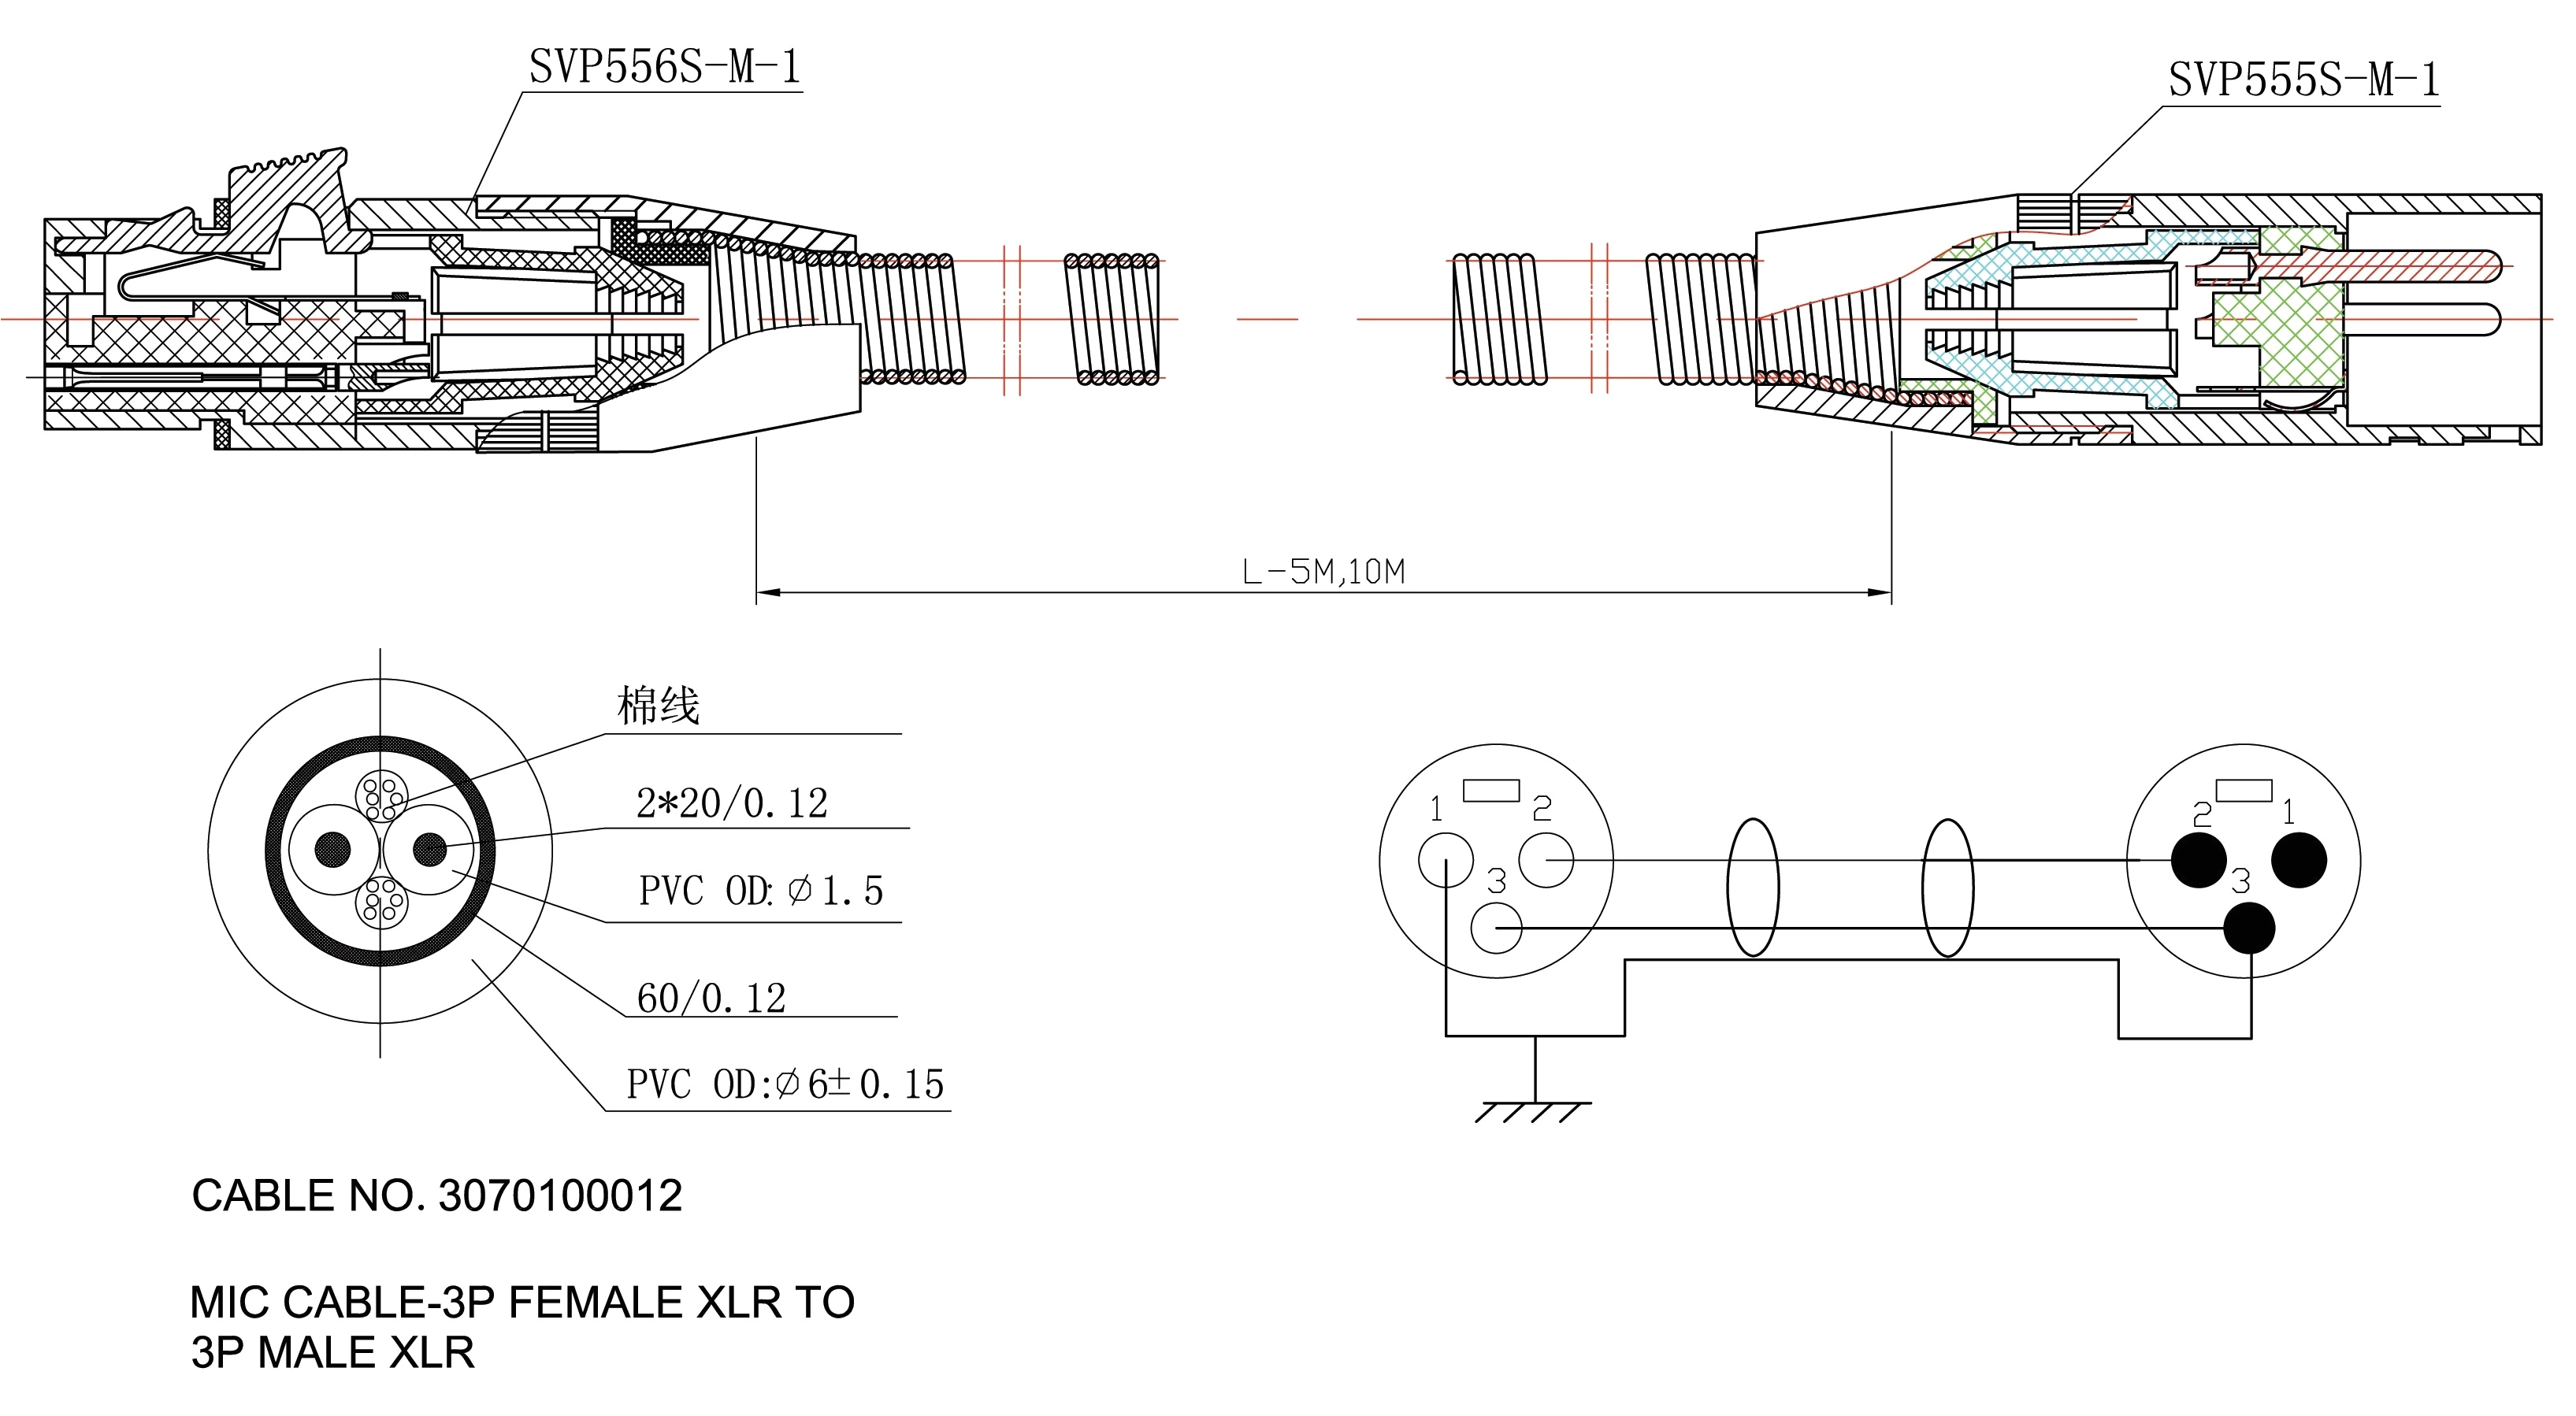 ford starter solenoid wiring diagram best of ford solenoid wiring diagram elegant wiring diagram for alternator jpg